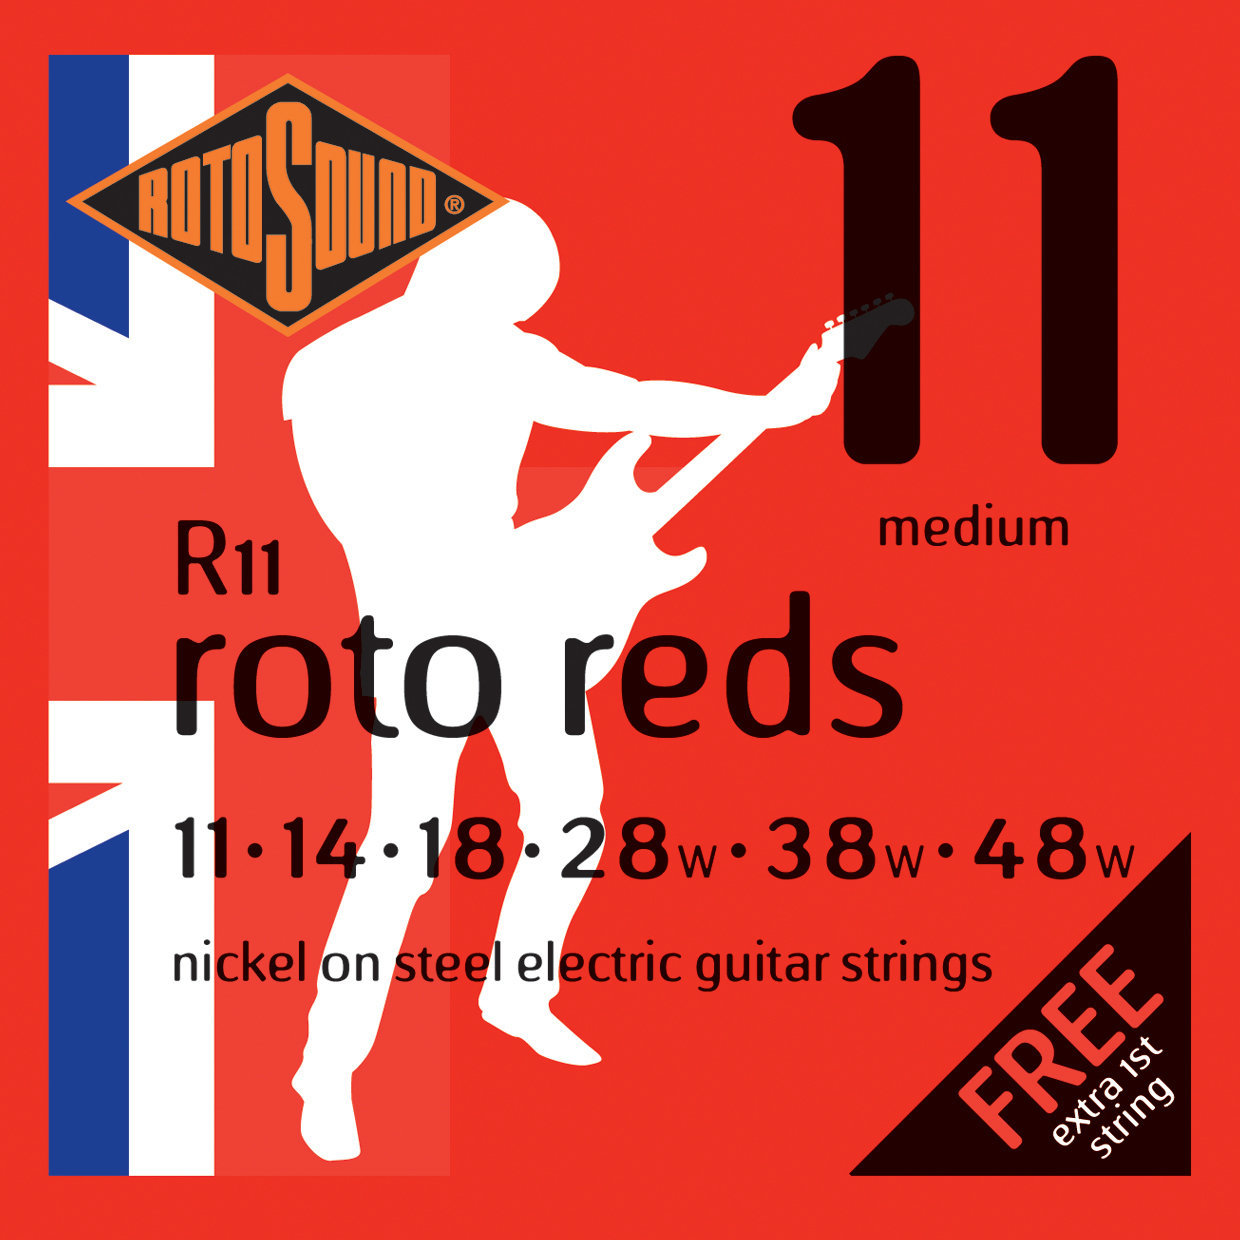 Cordes pour guitares électriques Rotosound R11